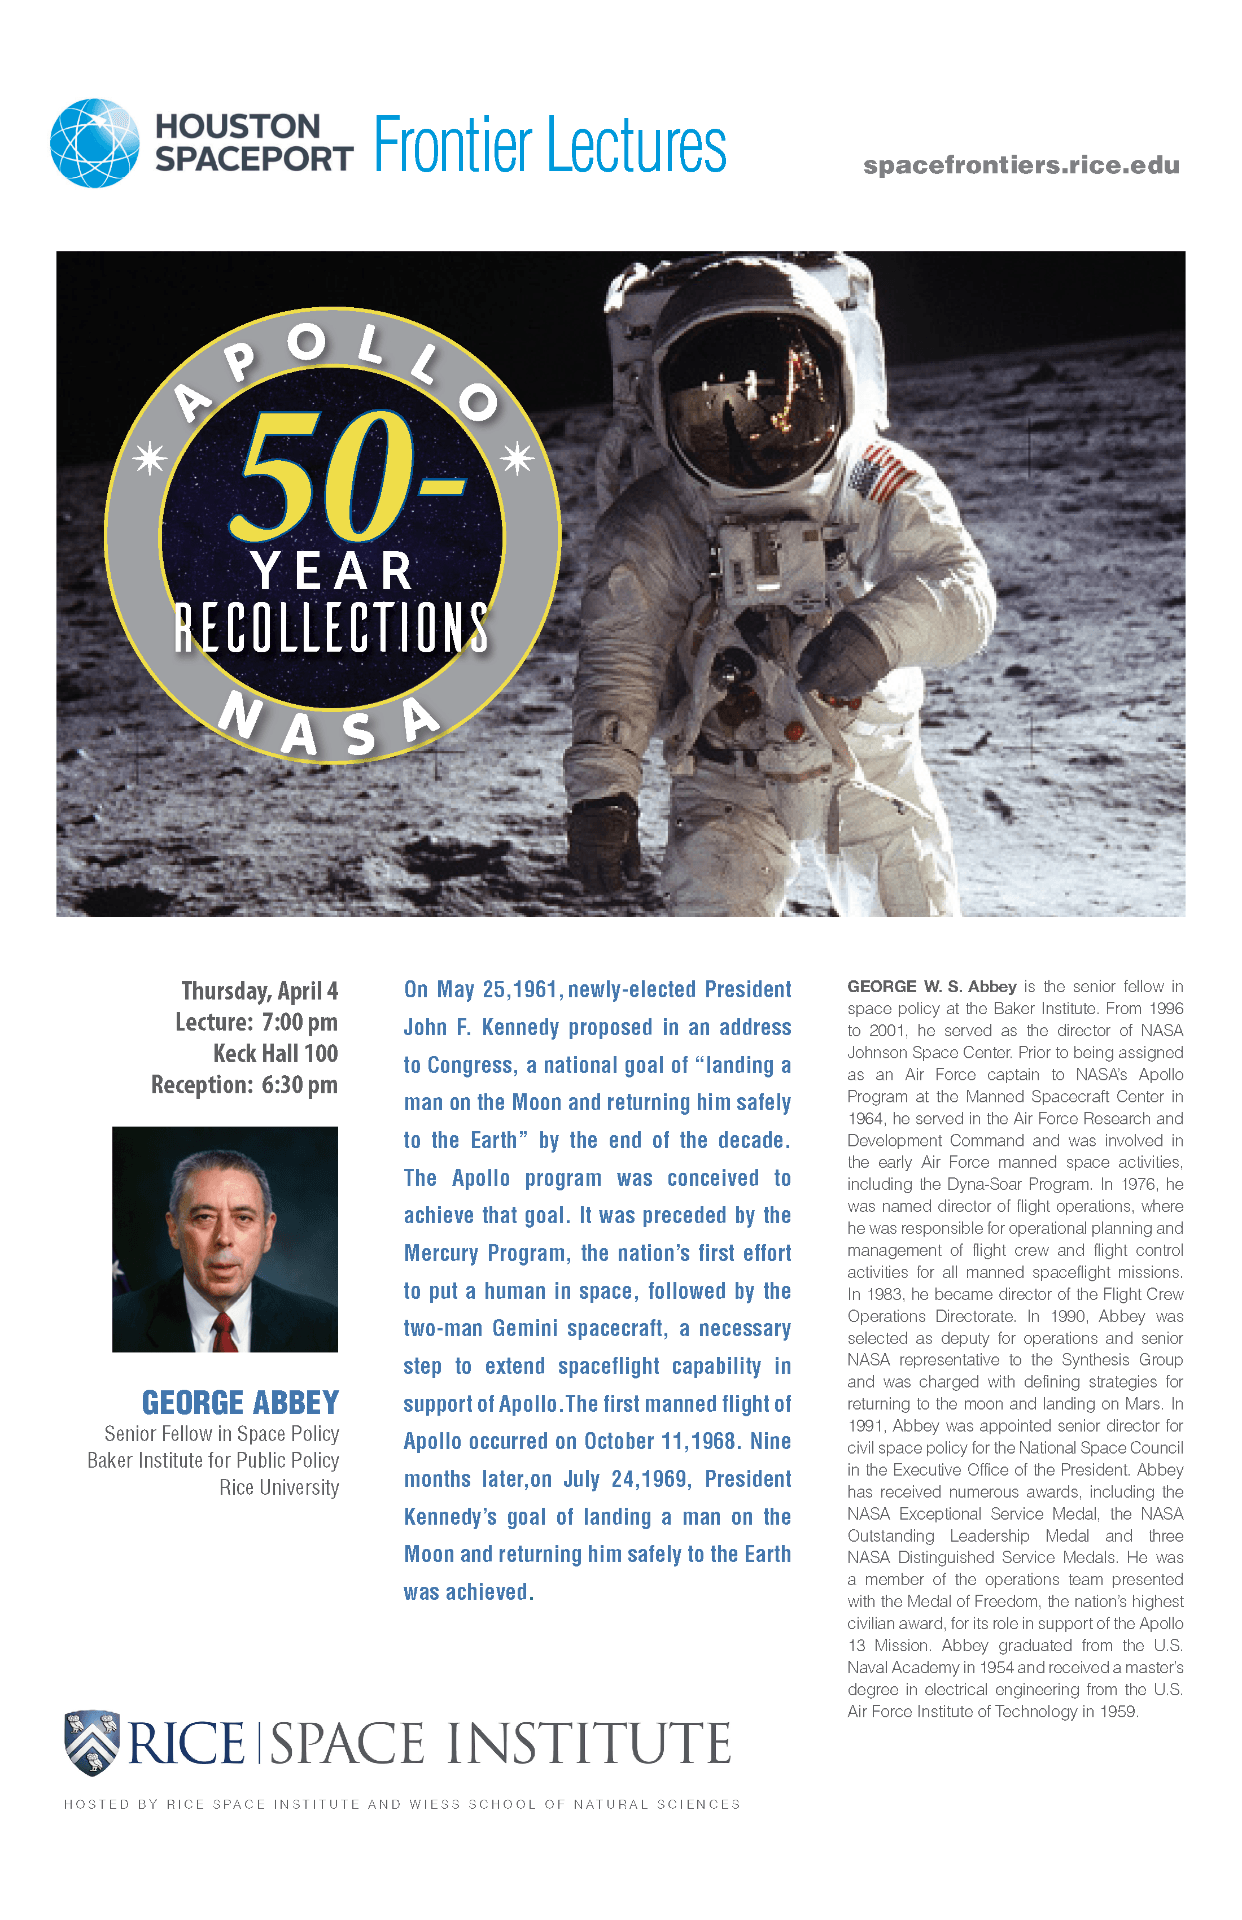 50 Year Recollections - Apollo / NASA poster